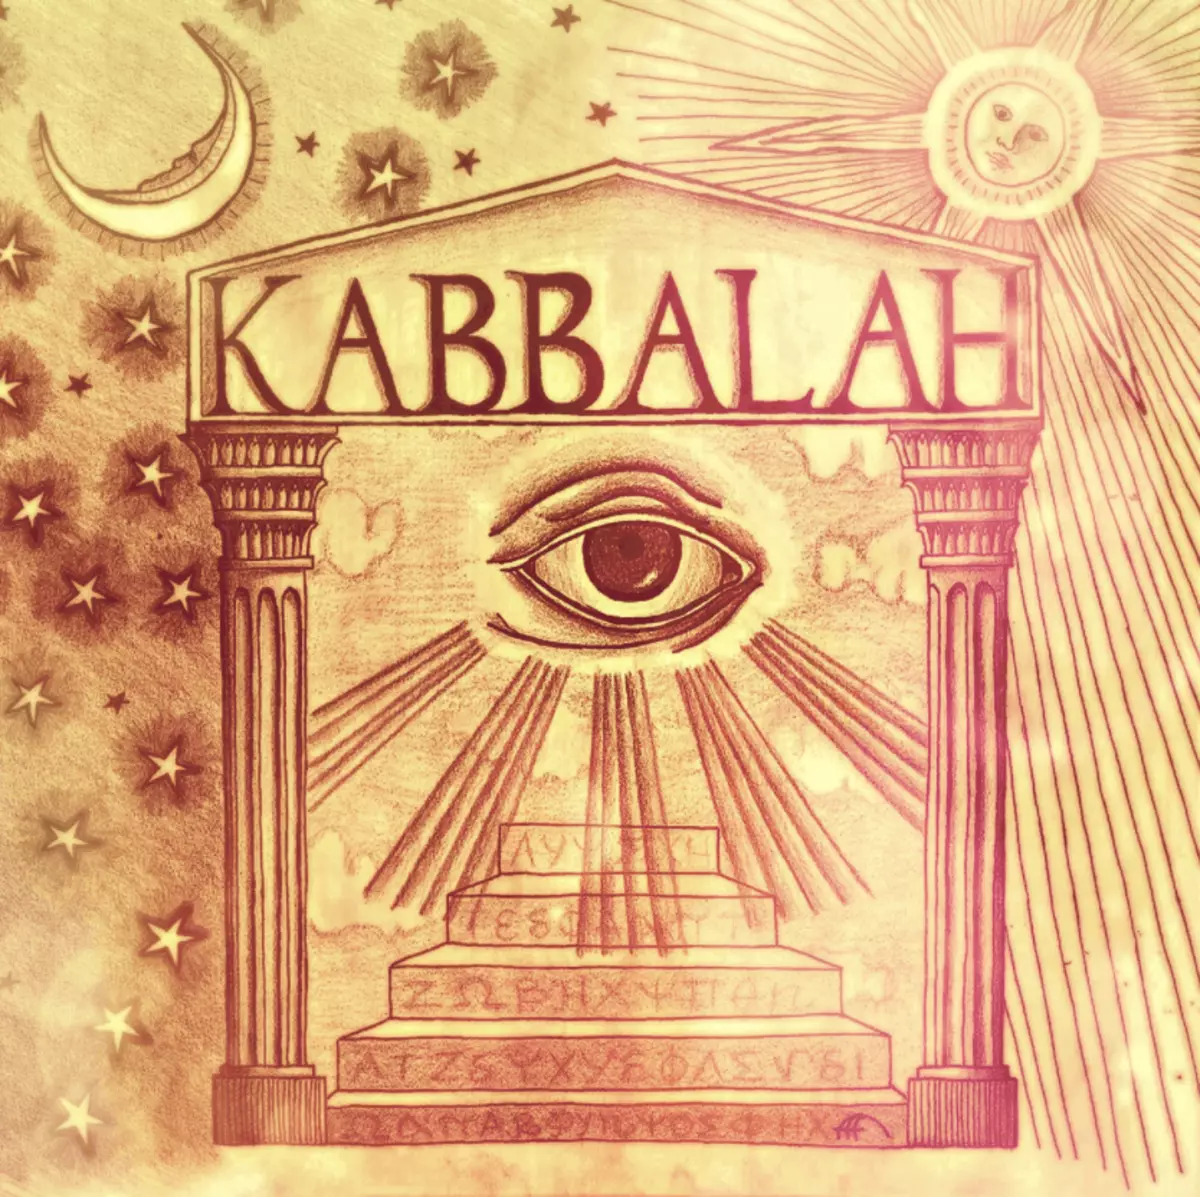 Kabballah